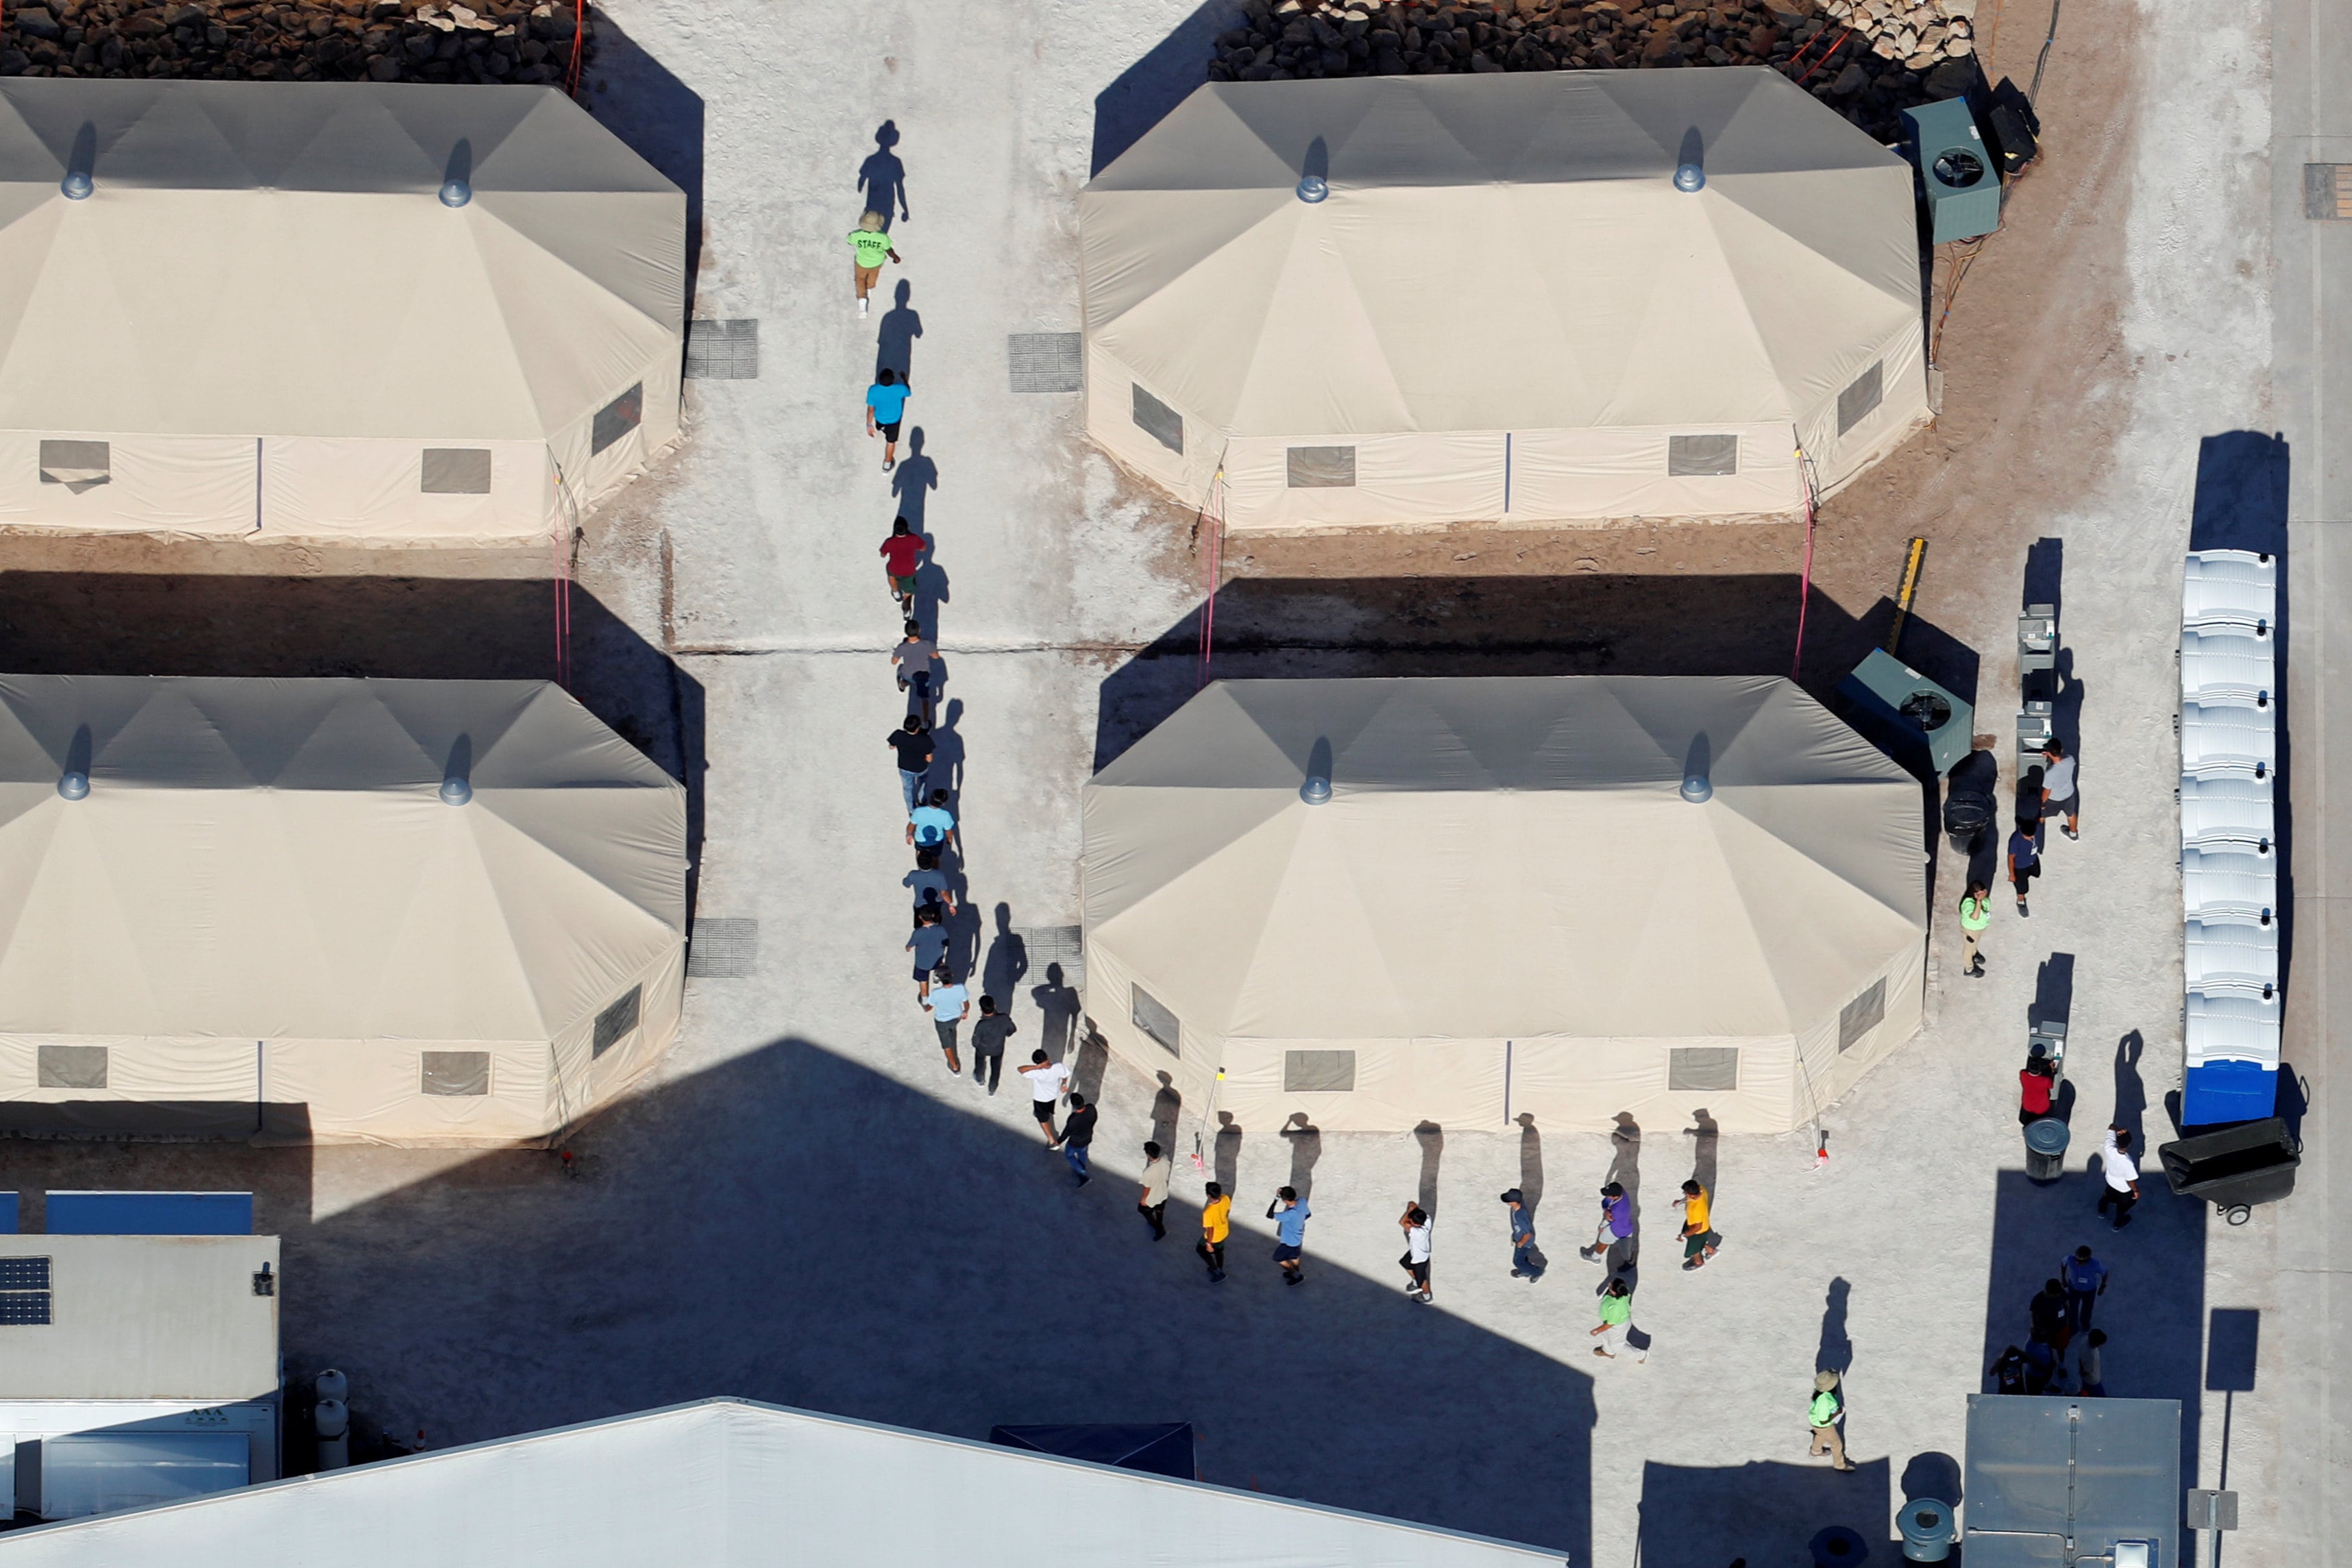 fotos-aereas-centros-detencion-migrantes-reuters-asi-son-jaulas-que-tienen-hijos-estados-unidos